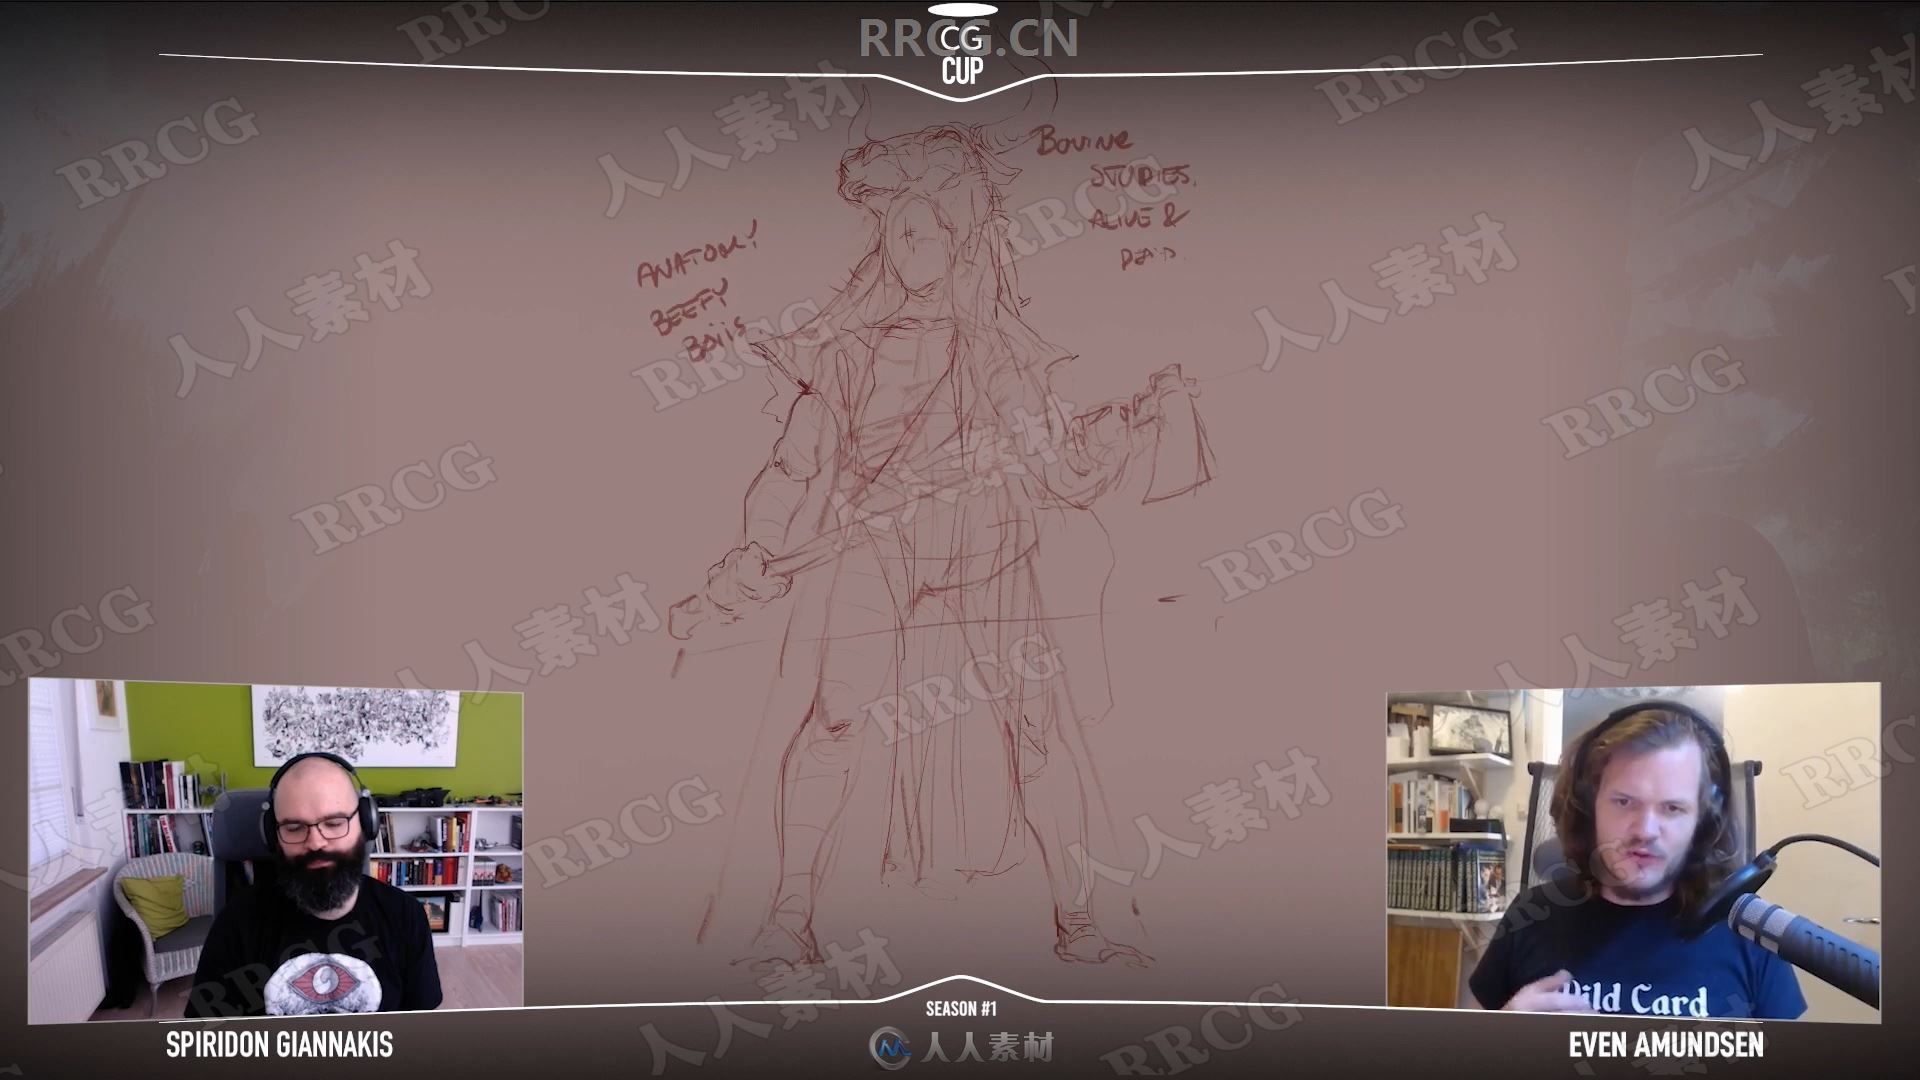 古代凶猛残暴战士概念设计数字绘画工作流视频教程